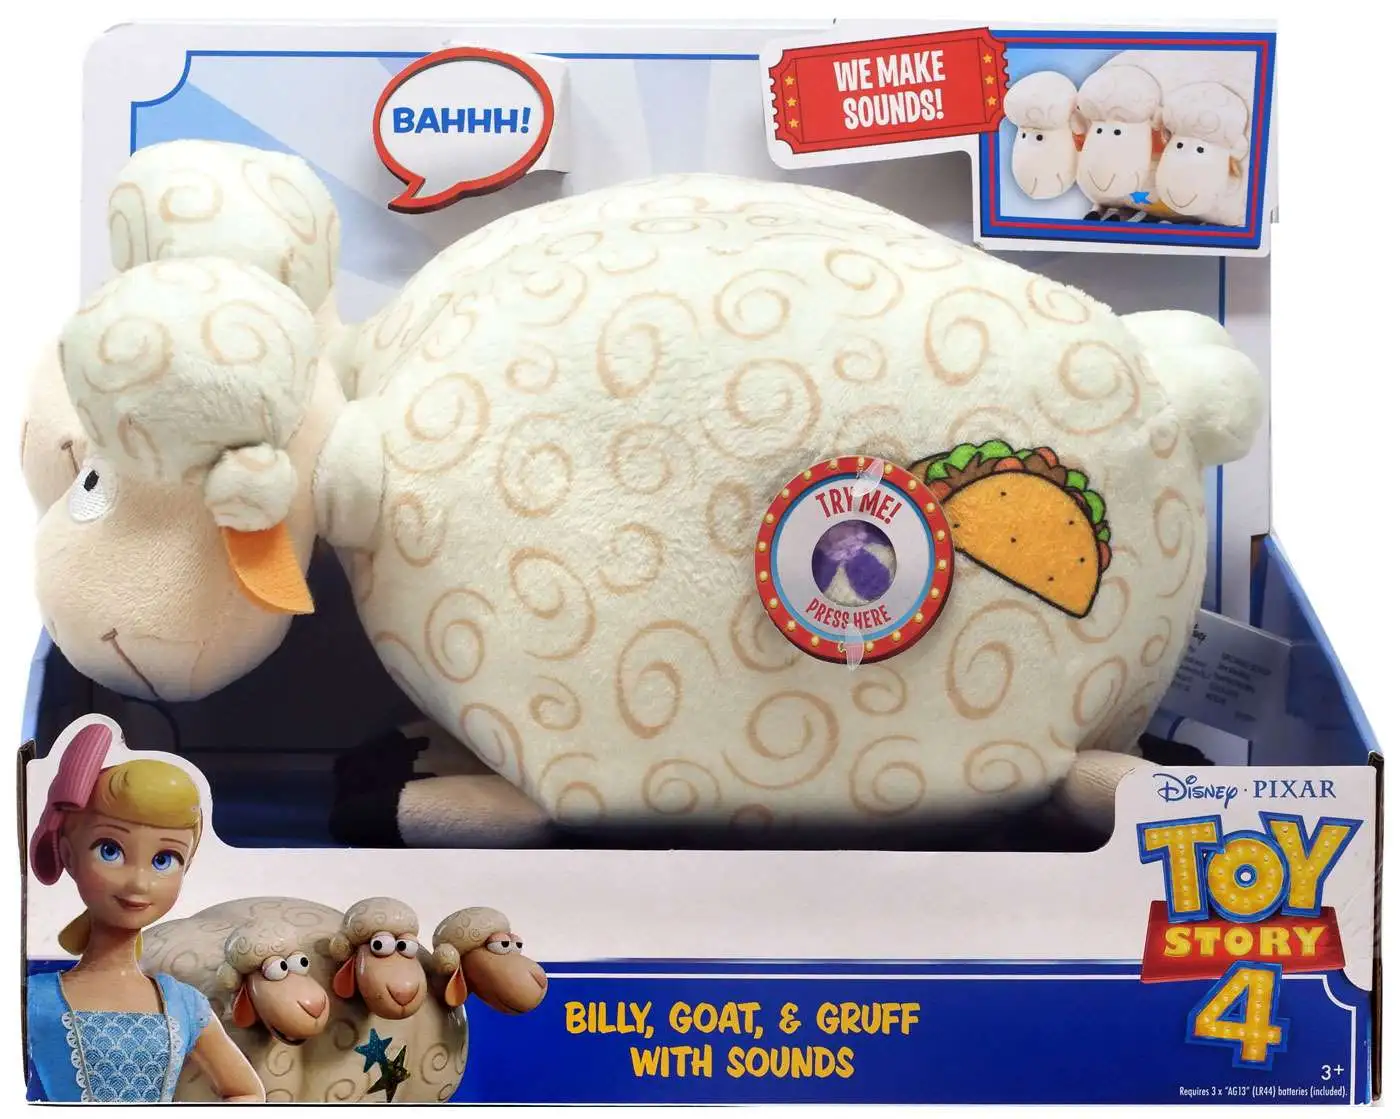 Disney Pixar Toy Story 4 Billy Goat and Gruff Sheep Plush medium soft toy 